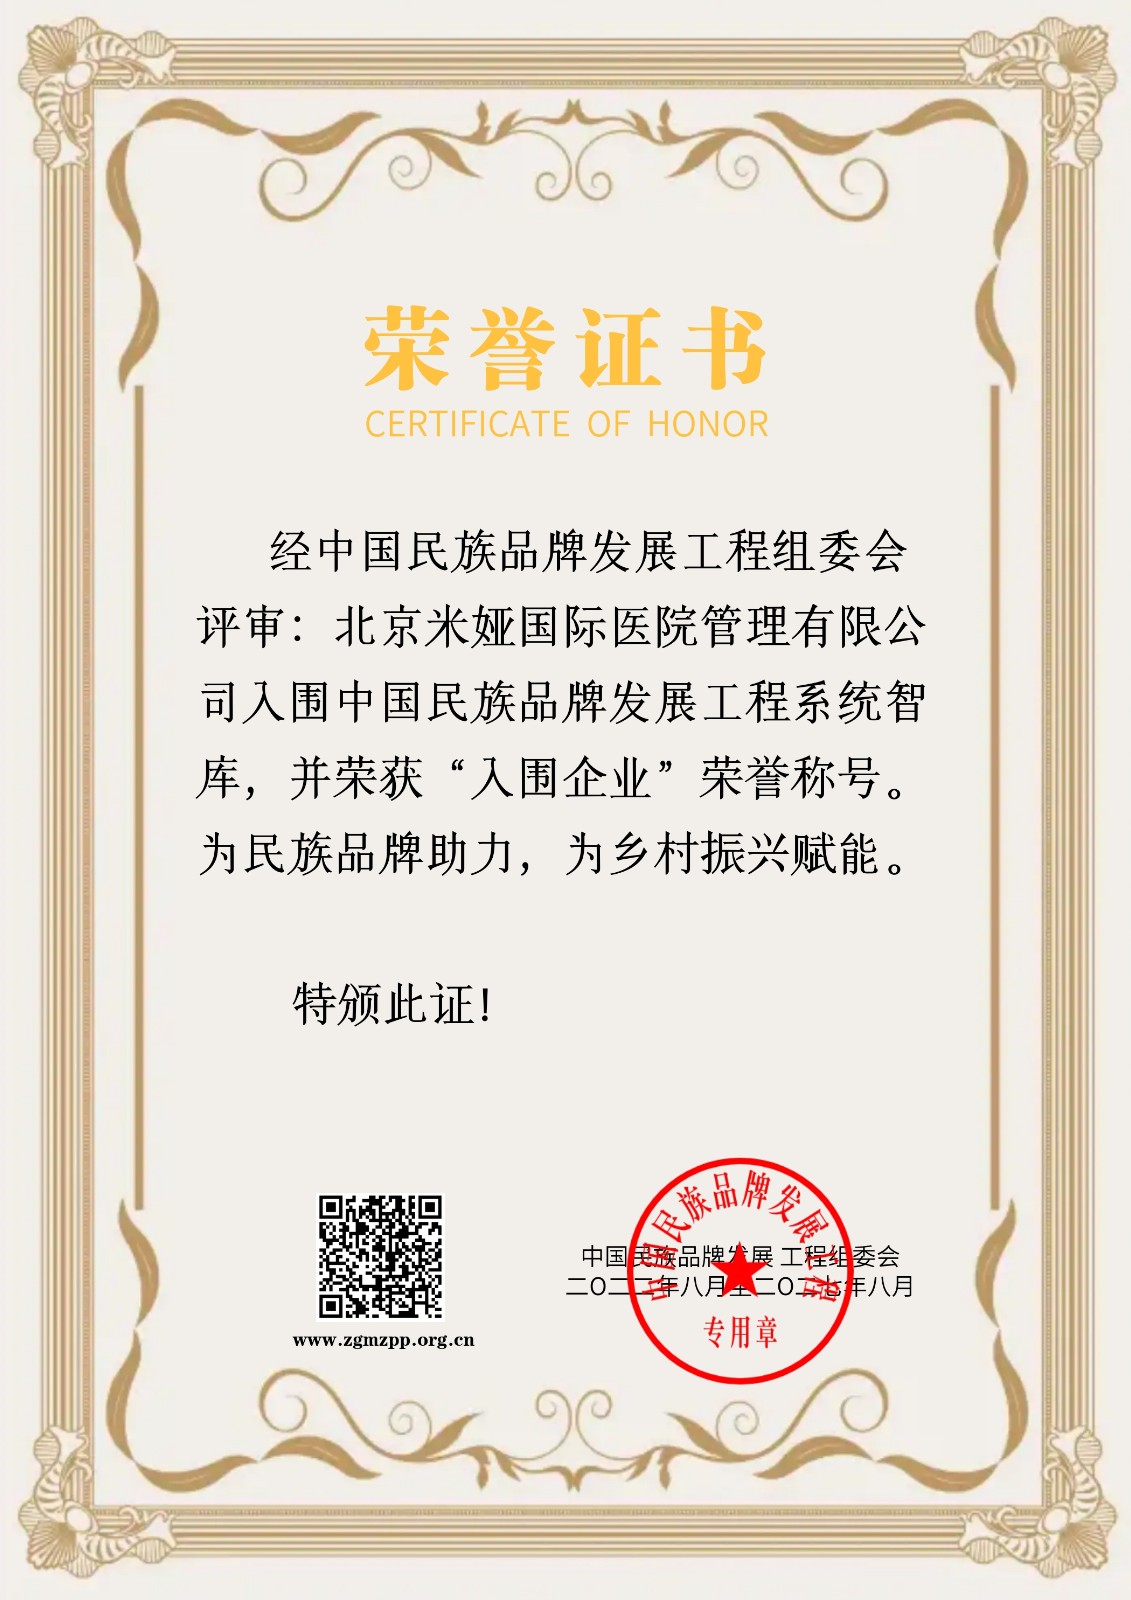 北京米娅国际医院管理有限公司证书标准版.jpeg